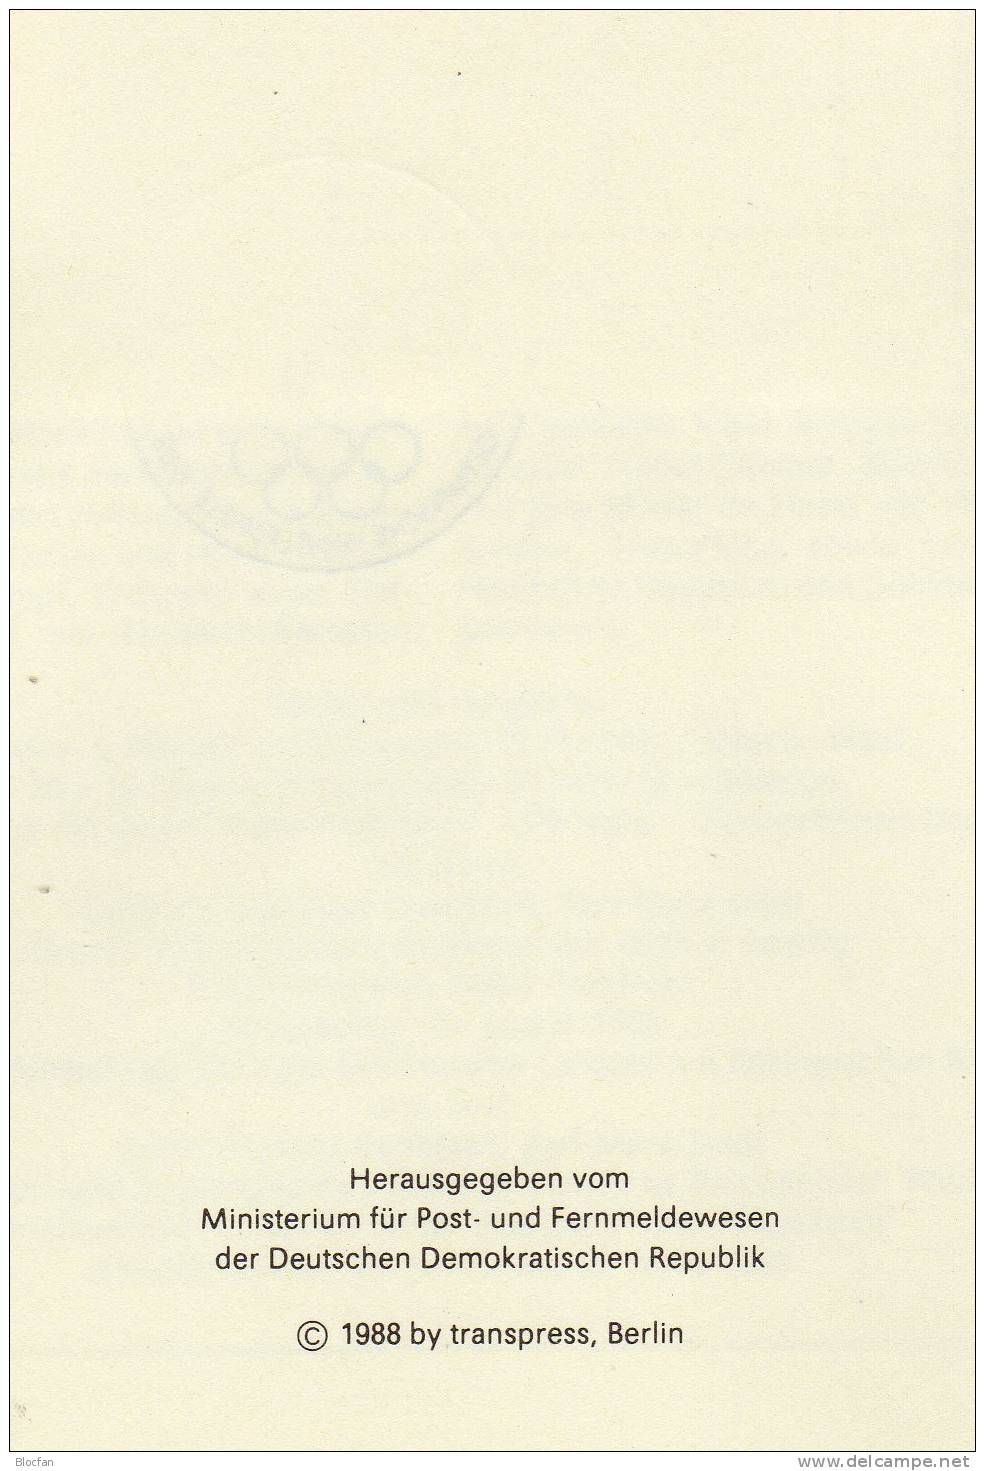 4.Jahressammlung 1988 Mit 30 ETB DDR 3140-3220, 3x Ganzsache SST 160€ Nummeriert Ersttagsblätter Plus Erinnerungsblatt - 1st Day – FDC (sheets)